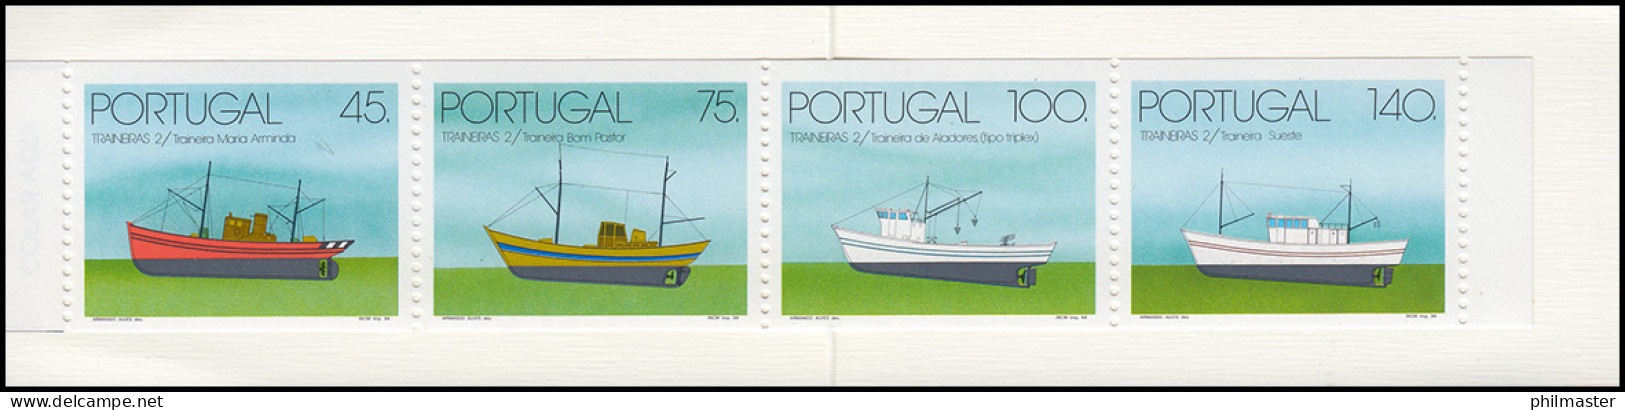 Portugal-Markenheftchen 11 Küstenfischerei Schleppnetzschiffe 1994, Postfrisch - Libretti